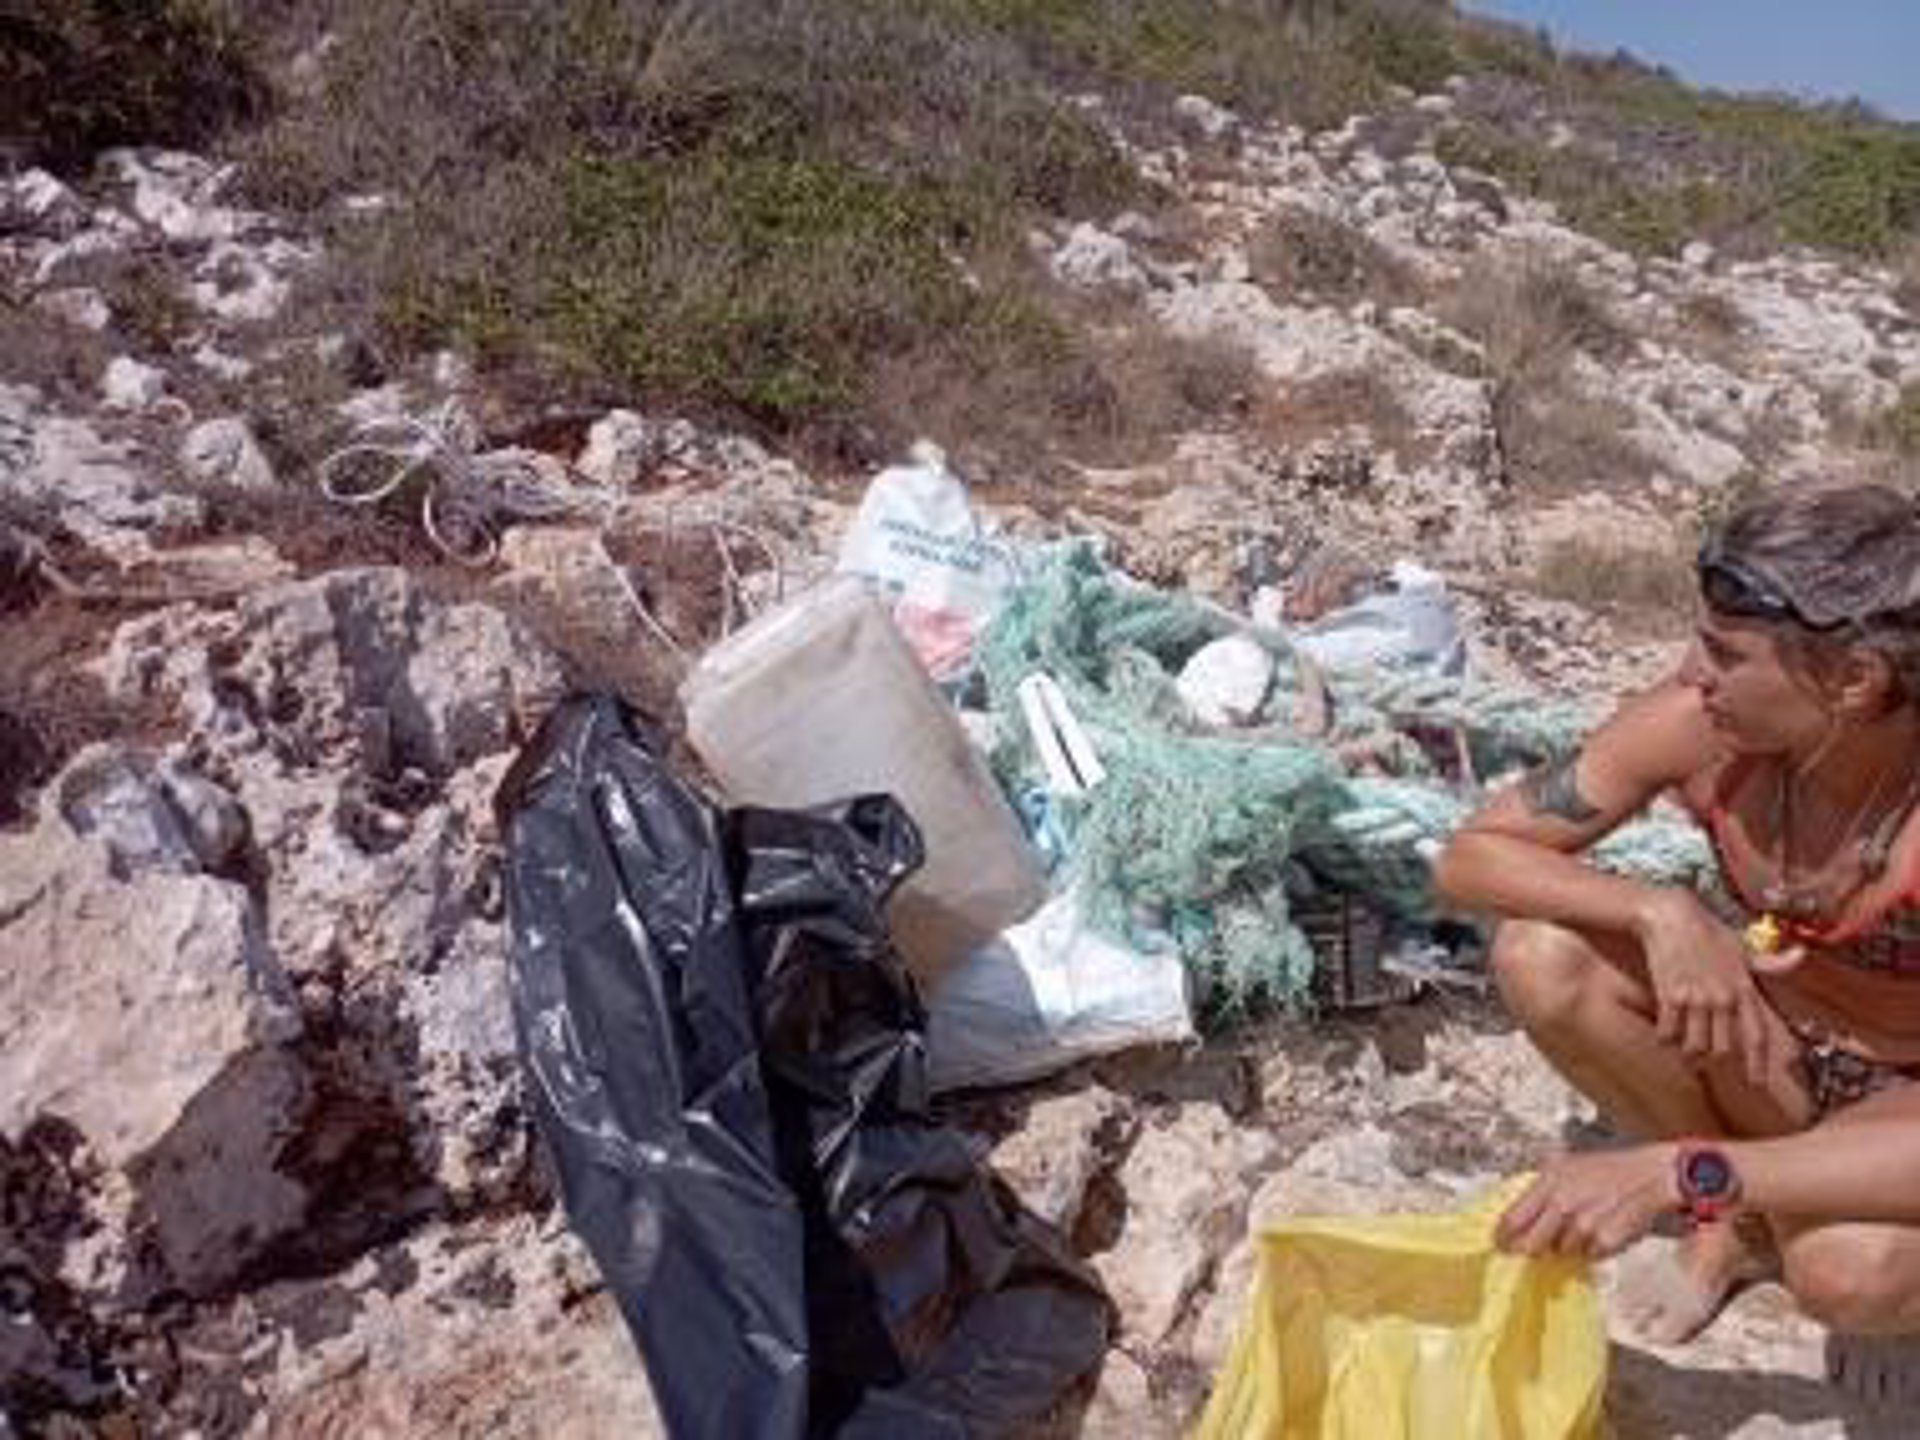 Imagen de los residuos retirados en una de las playas de Manacor. - AYUNTAMIENTO DE MANACOR